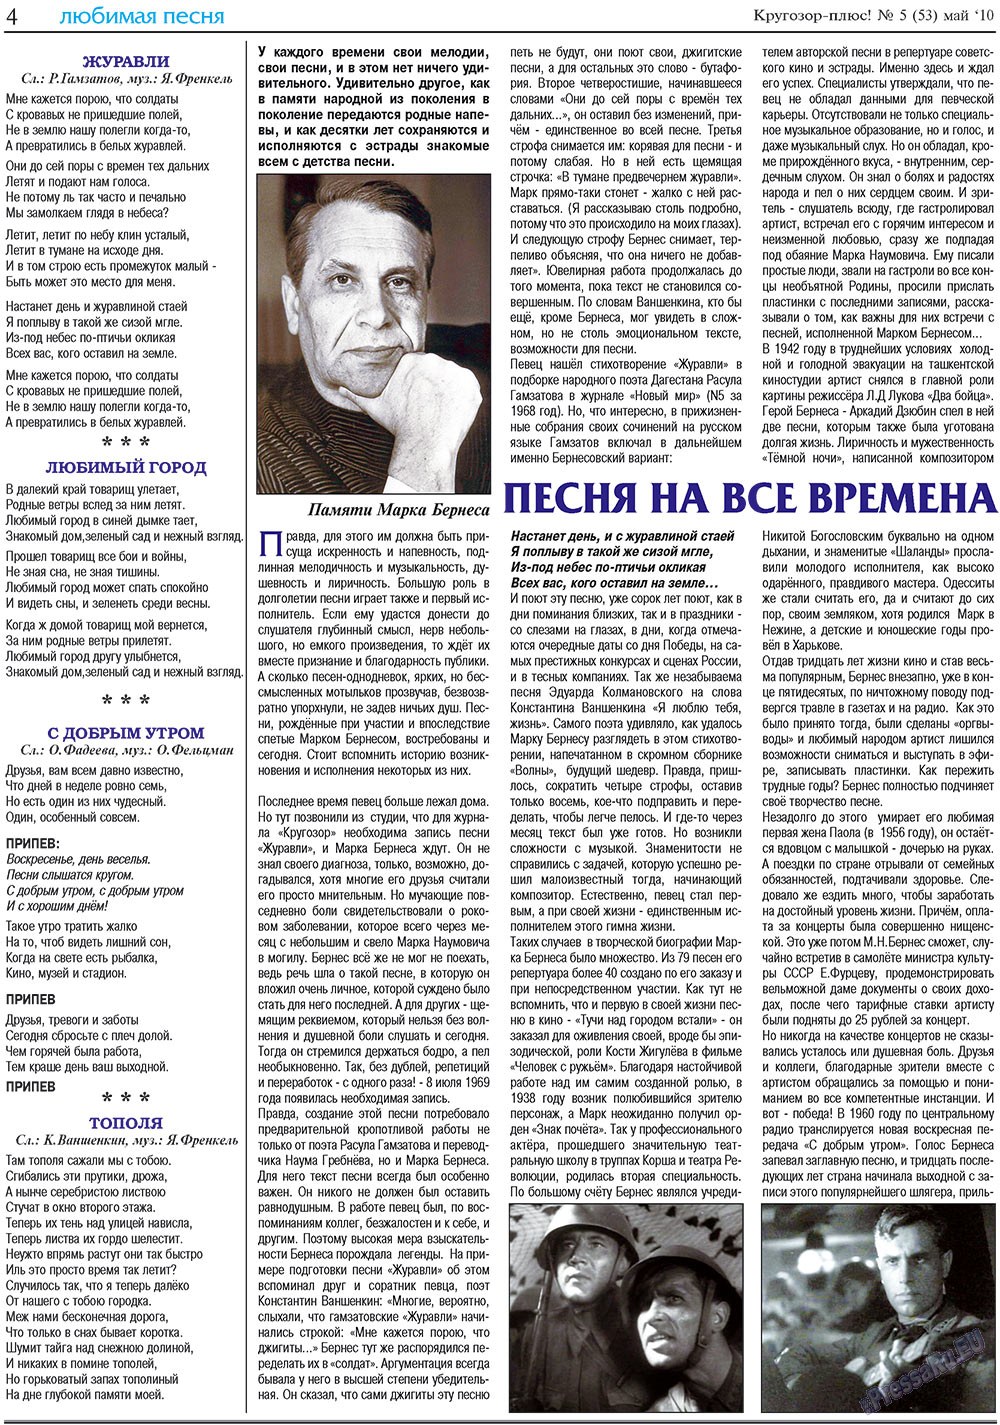 Кругозор плюс!, газета. 2010 №5 стр.20